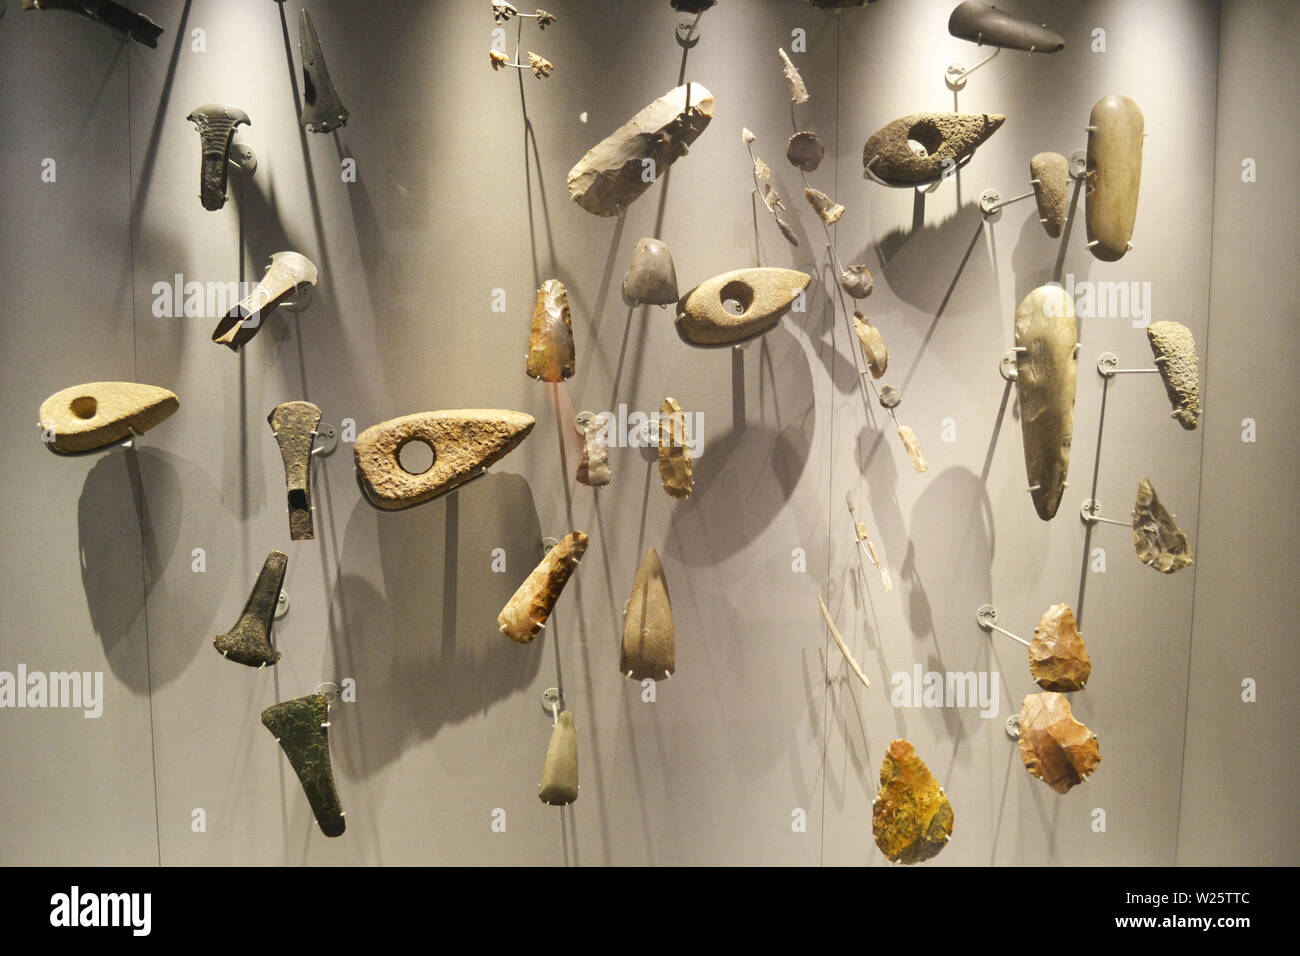 Prehistoric axe heads and arrow heads at Shrewsbury Museum and Art Gallery, Shrewsbury, Shropshire, UK Stock Photo